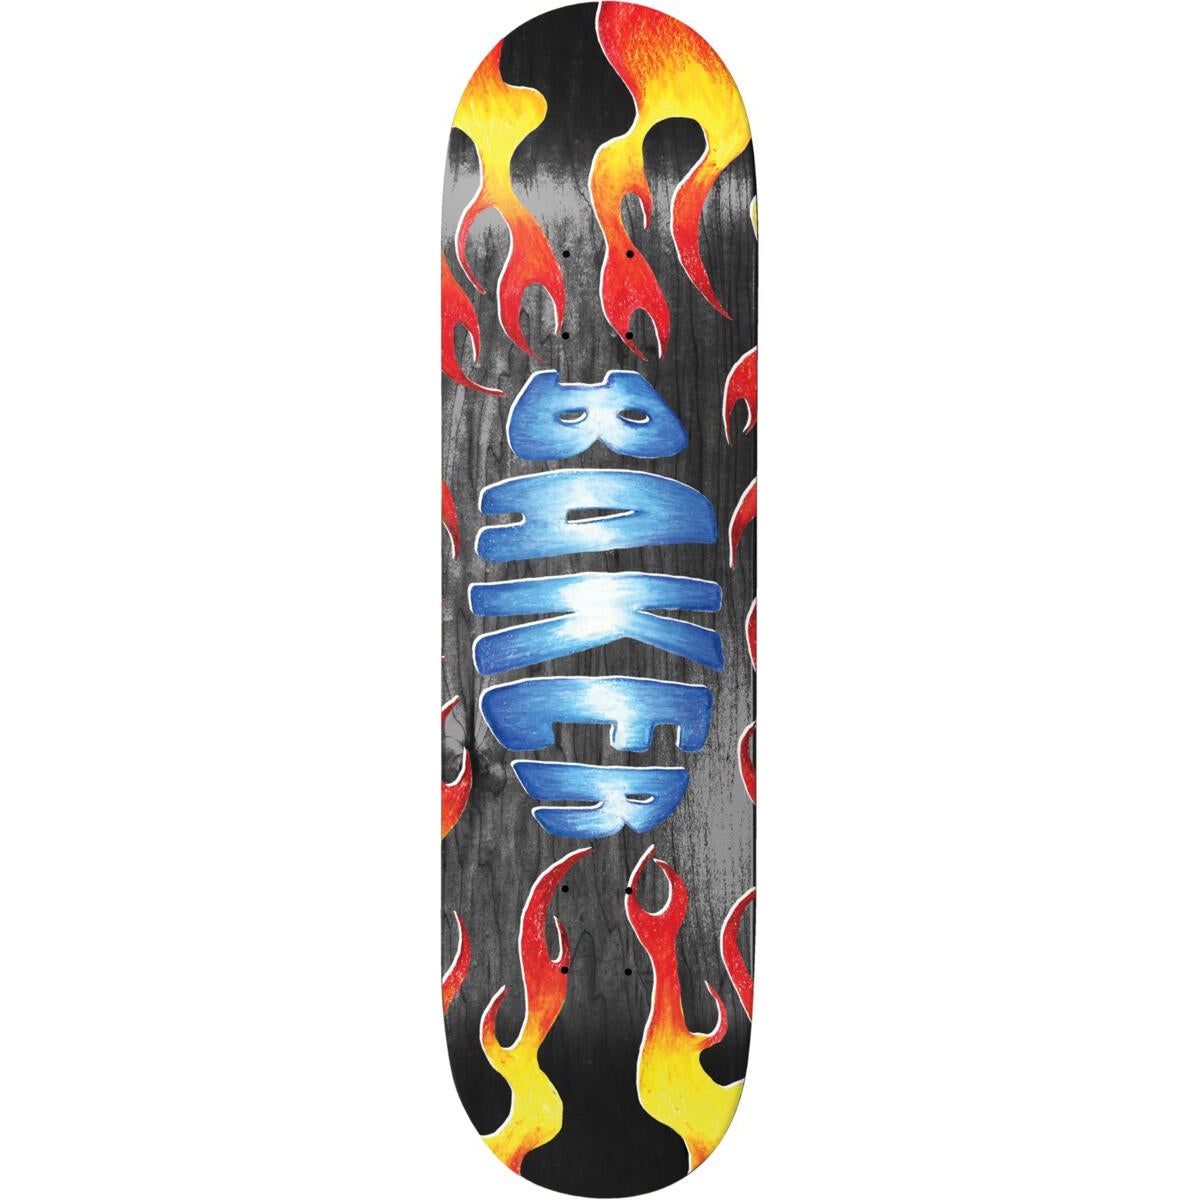 Zach Allen Flames Baker Skateboard Deck